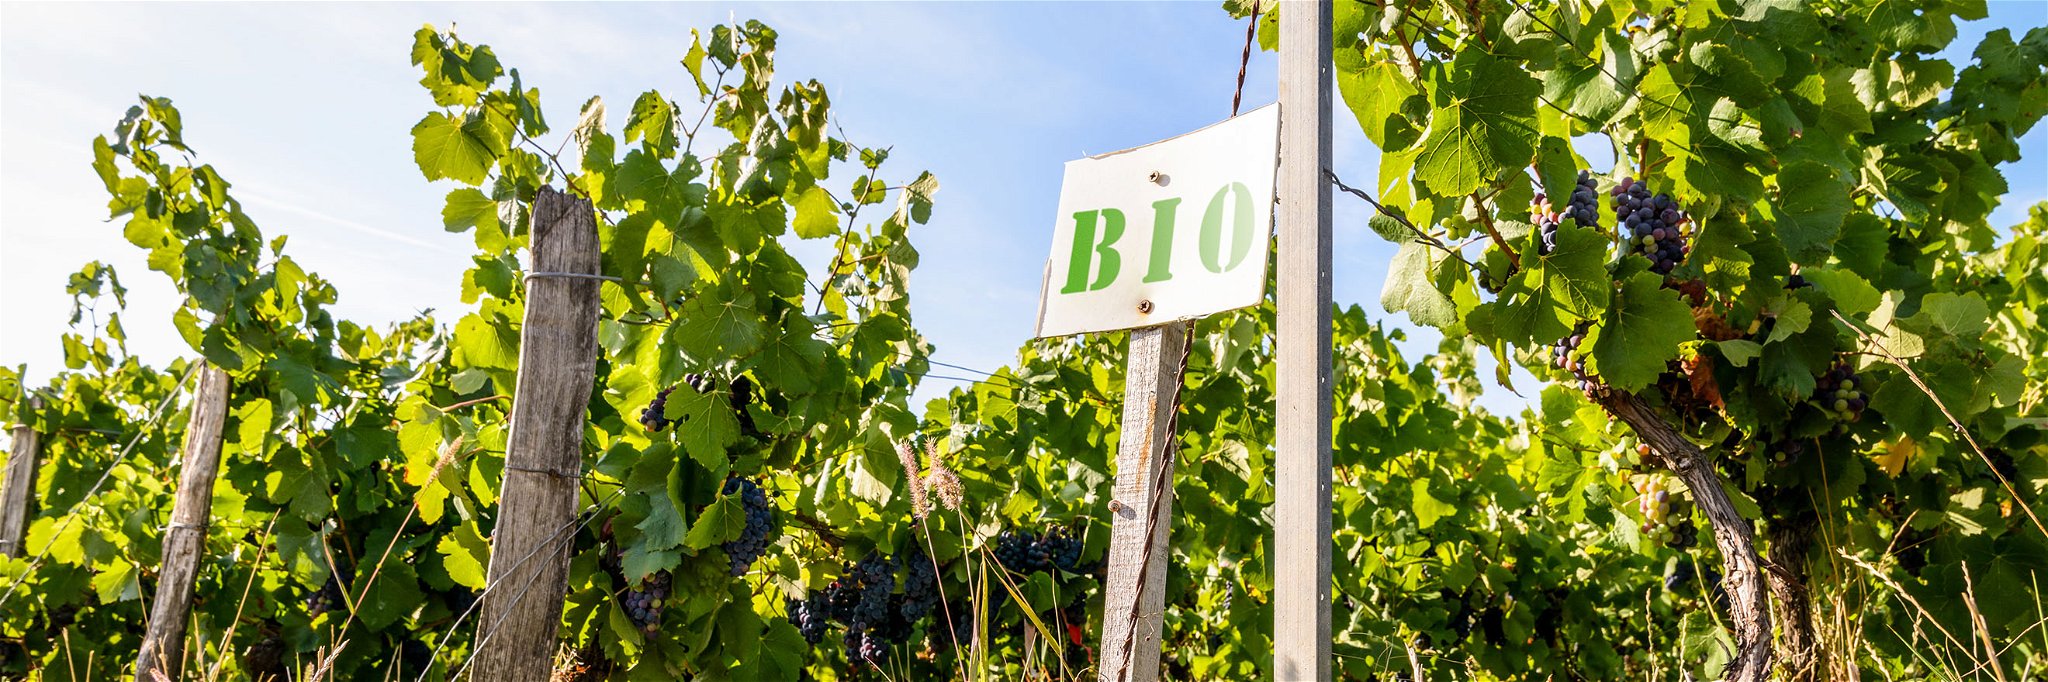 In manchen Weinbauregionen in Deutschland beträgt der Anteil von biozertifizierten Winzern bereits rund 20 Prozent.